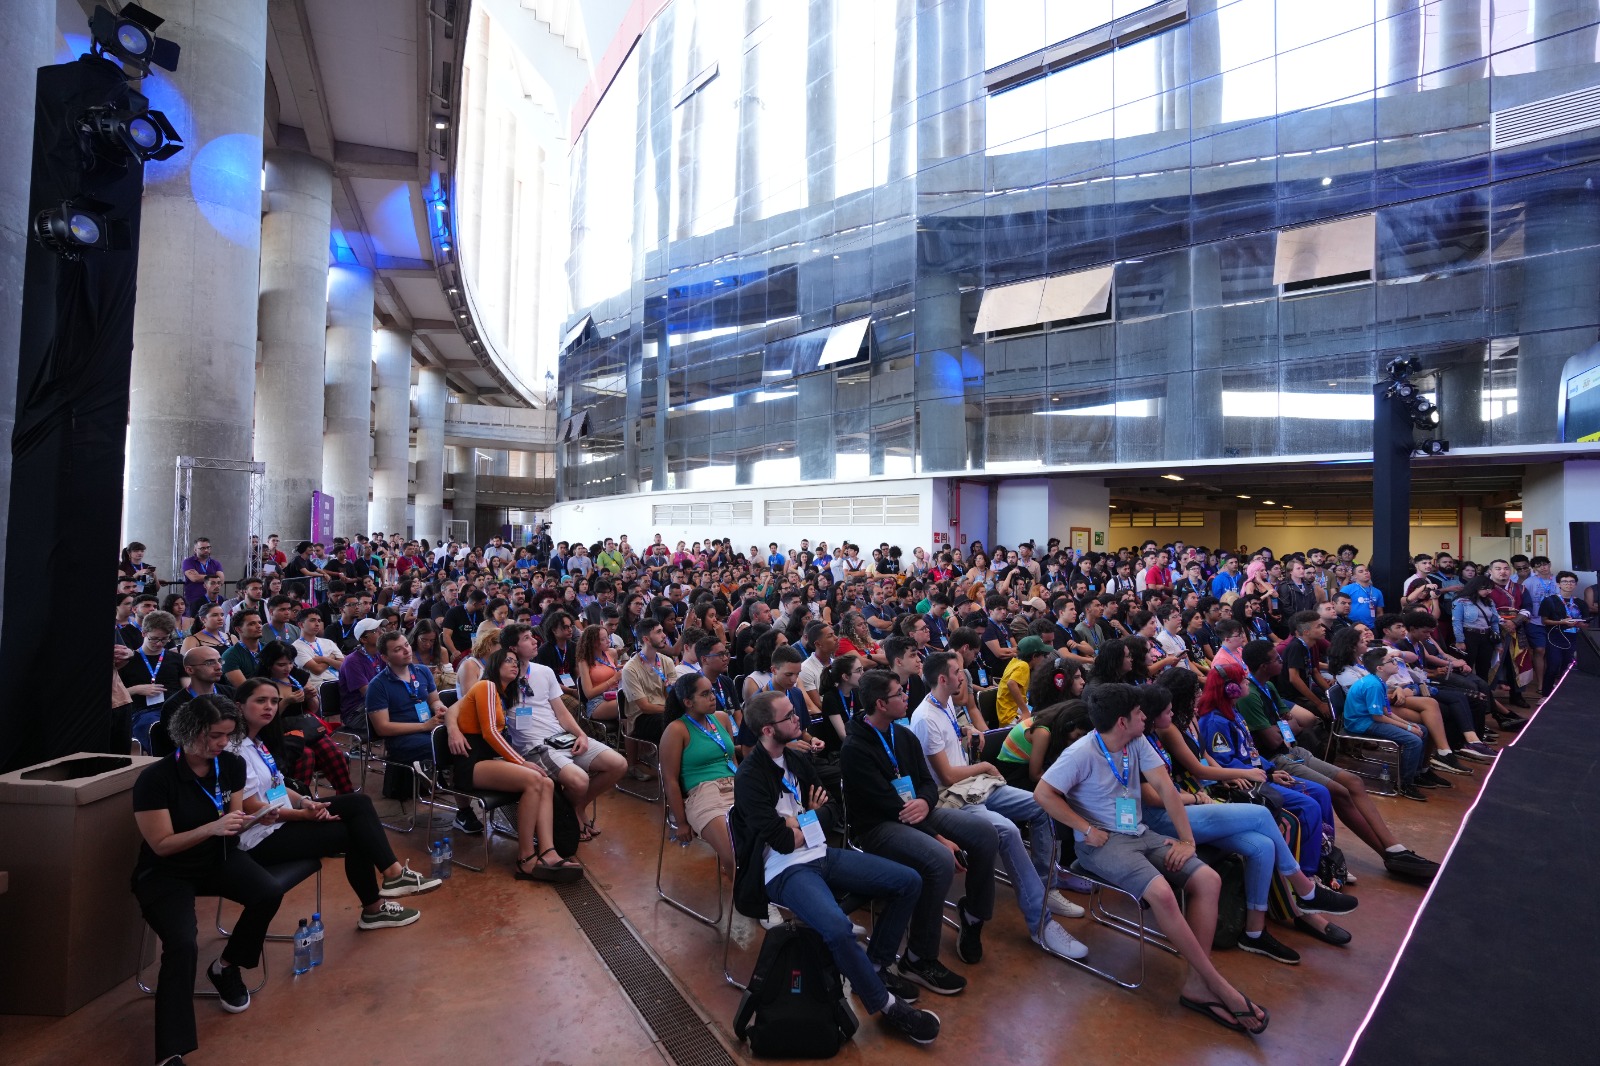 Foram mais de 500 palestras e workshops dedicados a cultura maker, games, educação e empreendedorismo | Foto: Divulgação/Secti-DF